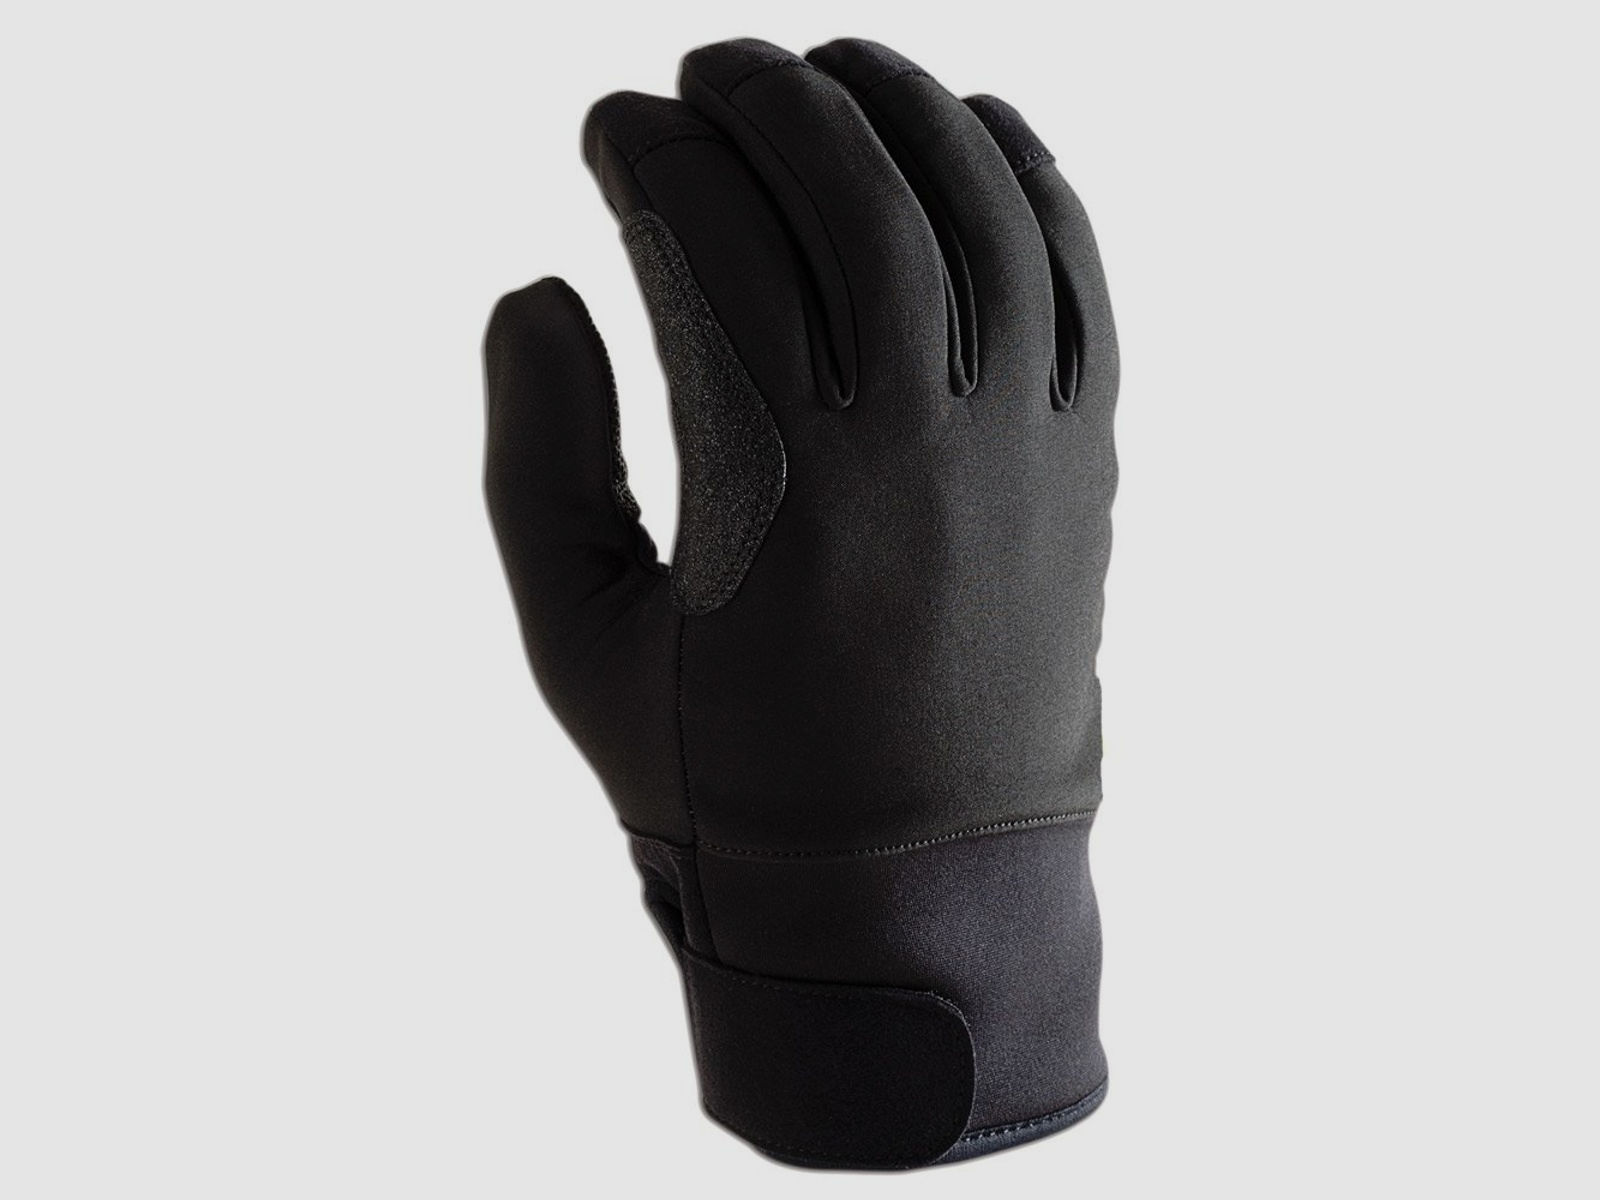 MTP cold glove schnittfeste Winter Einsatzhandschuhe